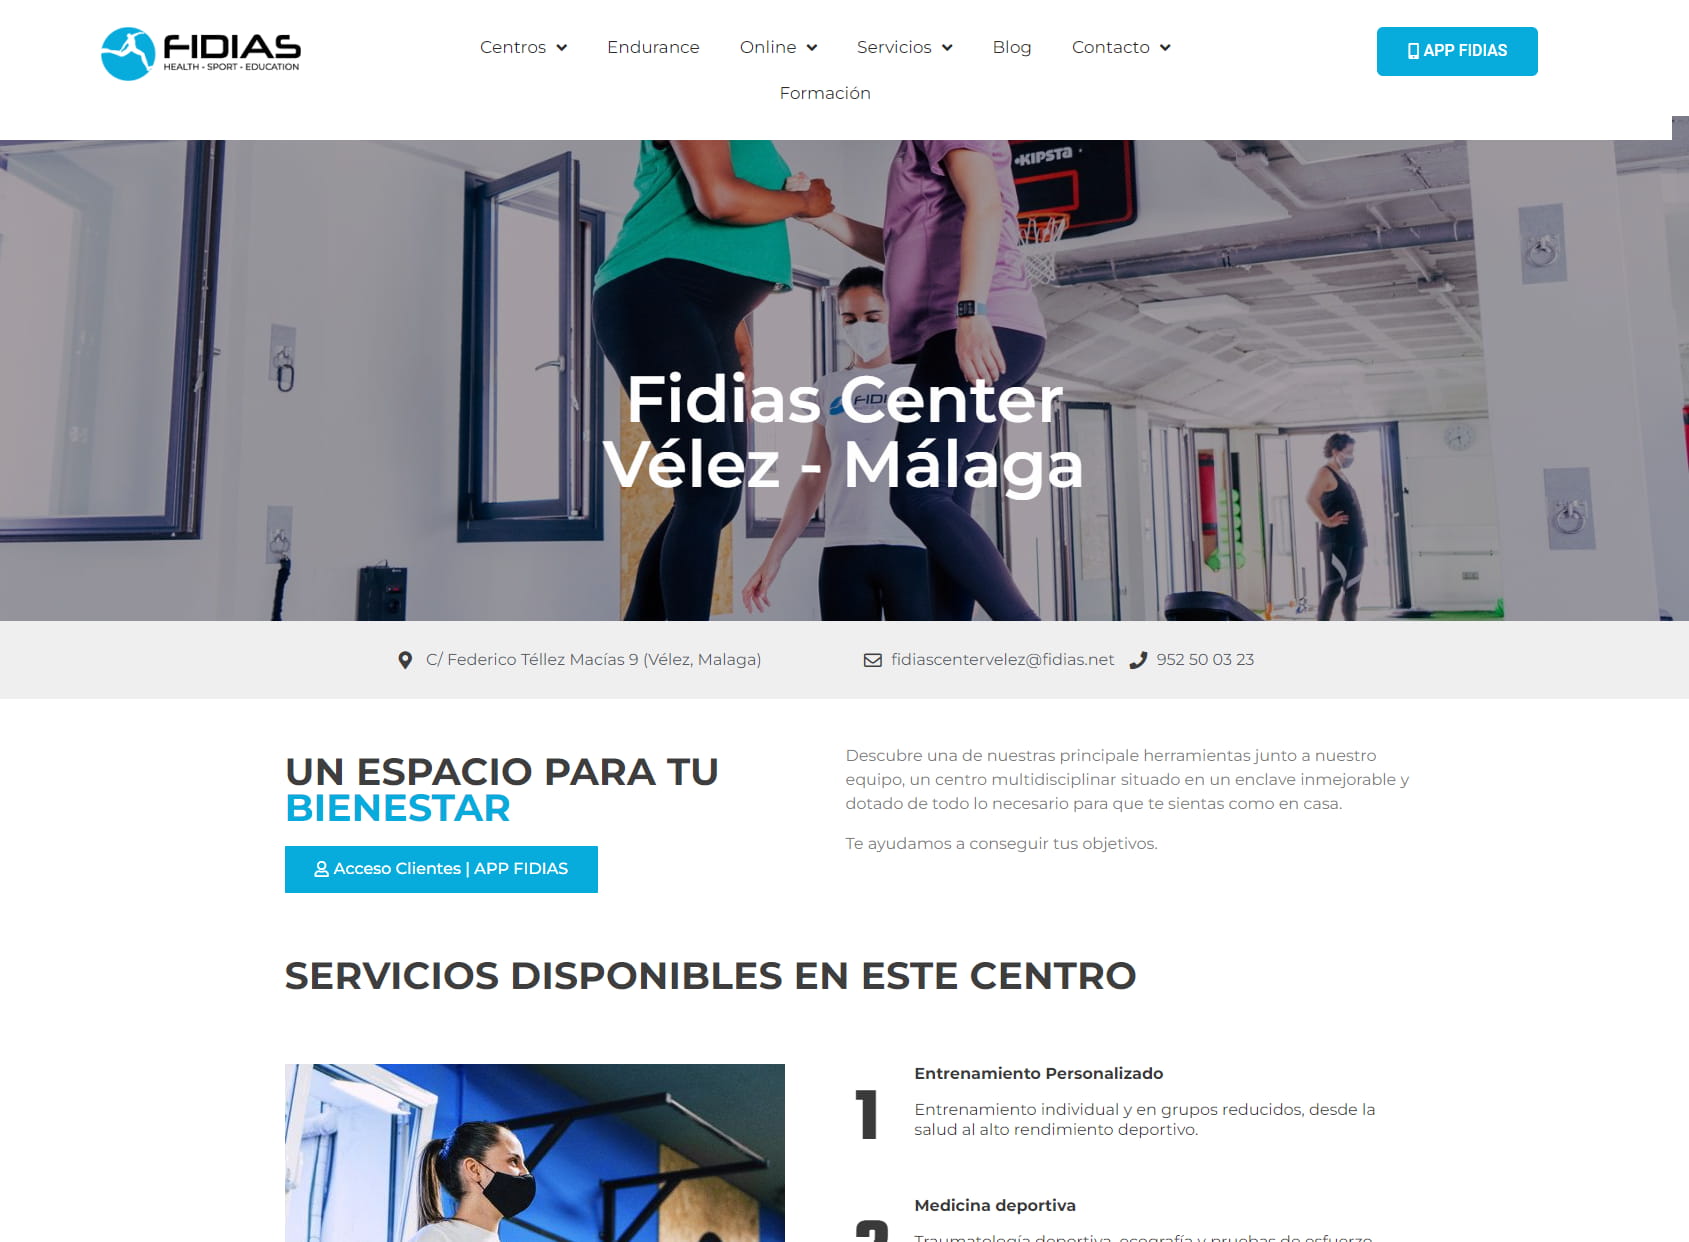 Fidias Center Vélez